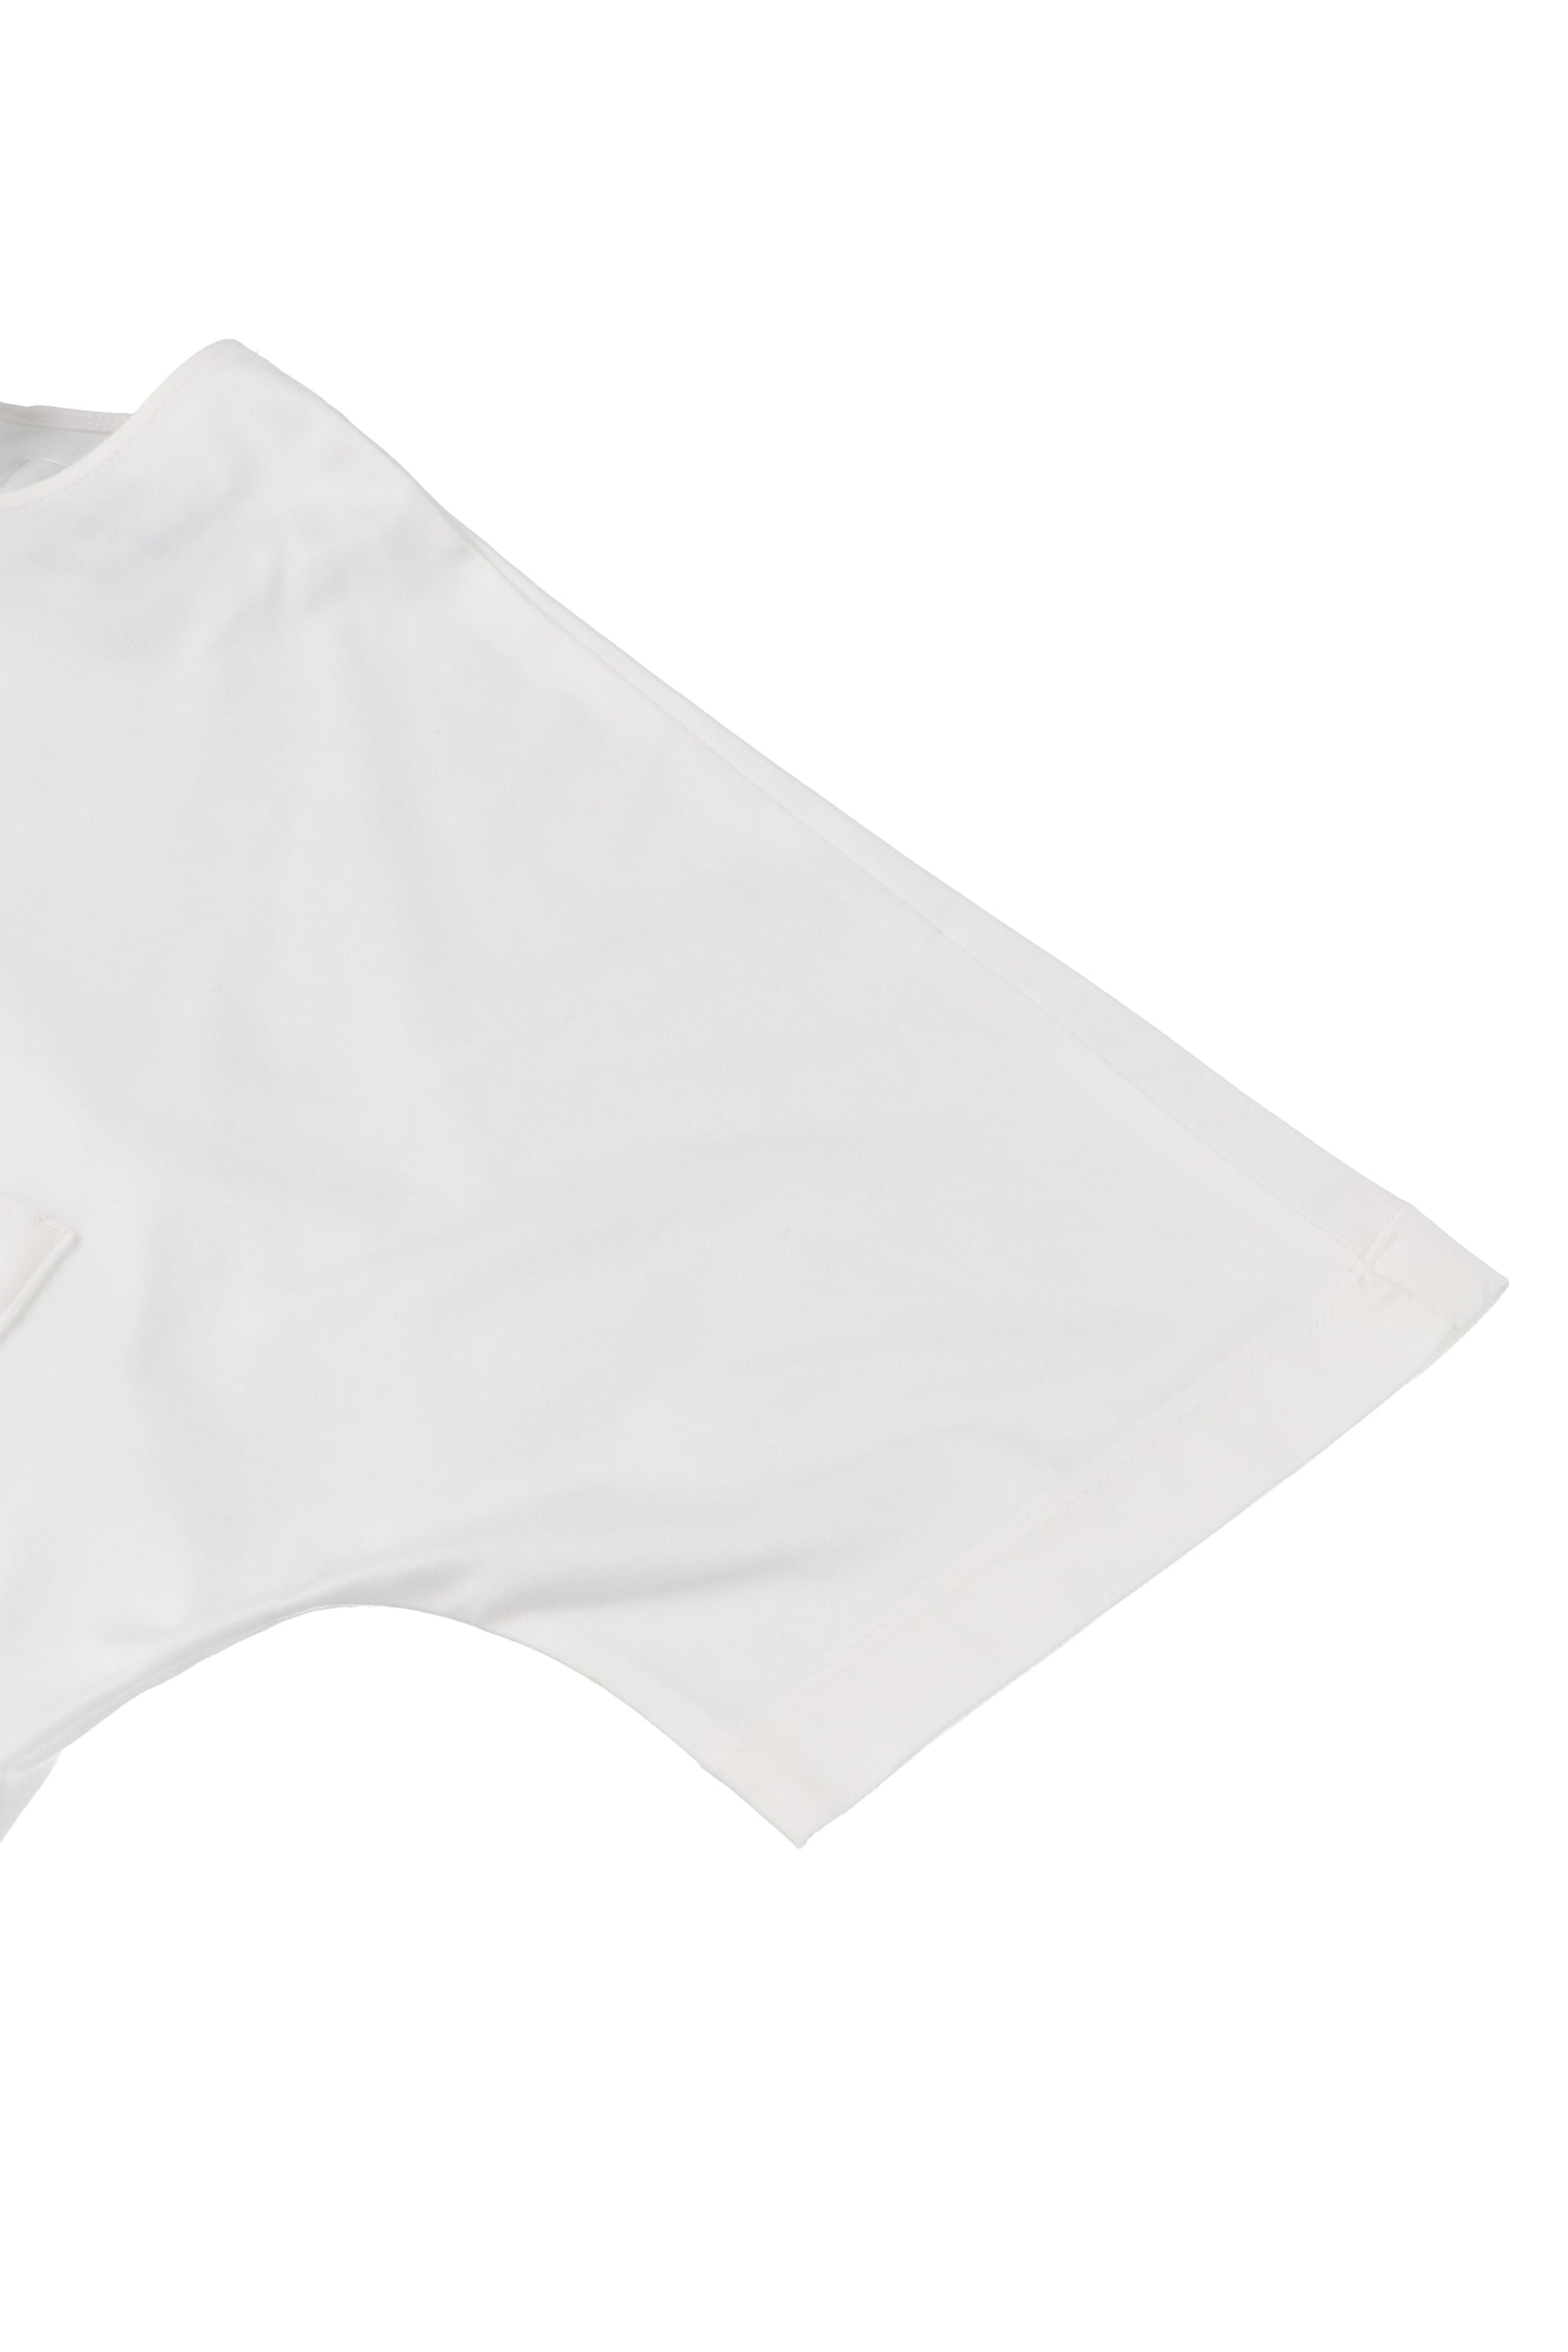 Giza cotton pocket blouse T-shirt 